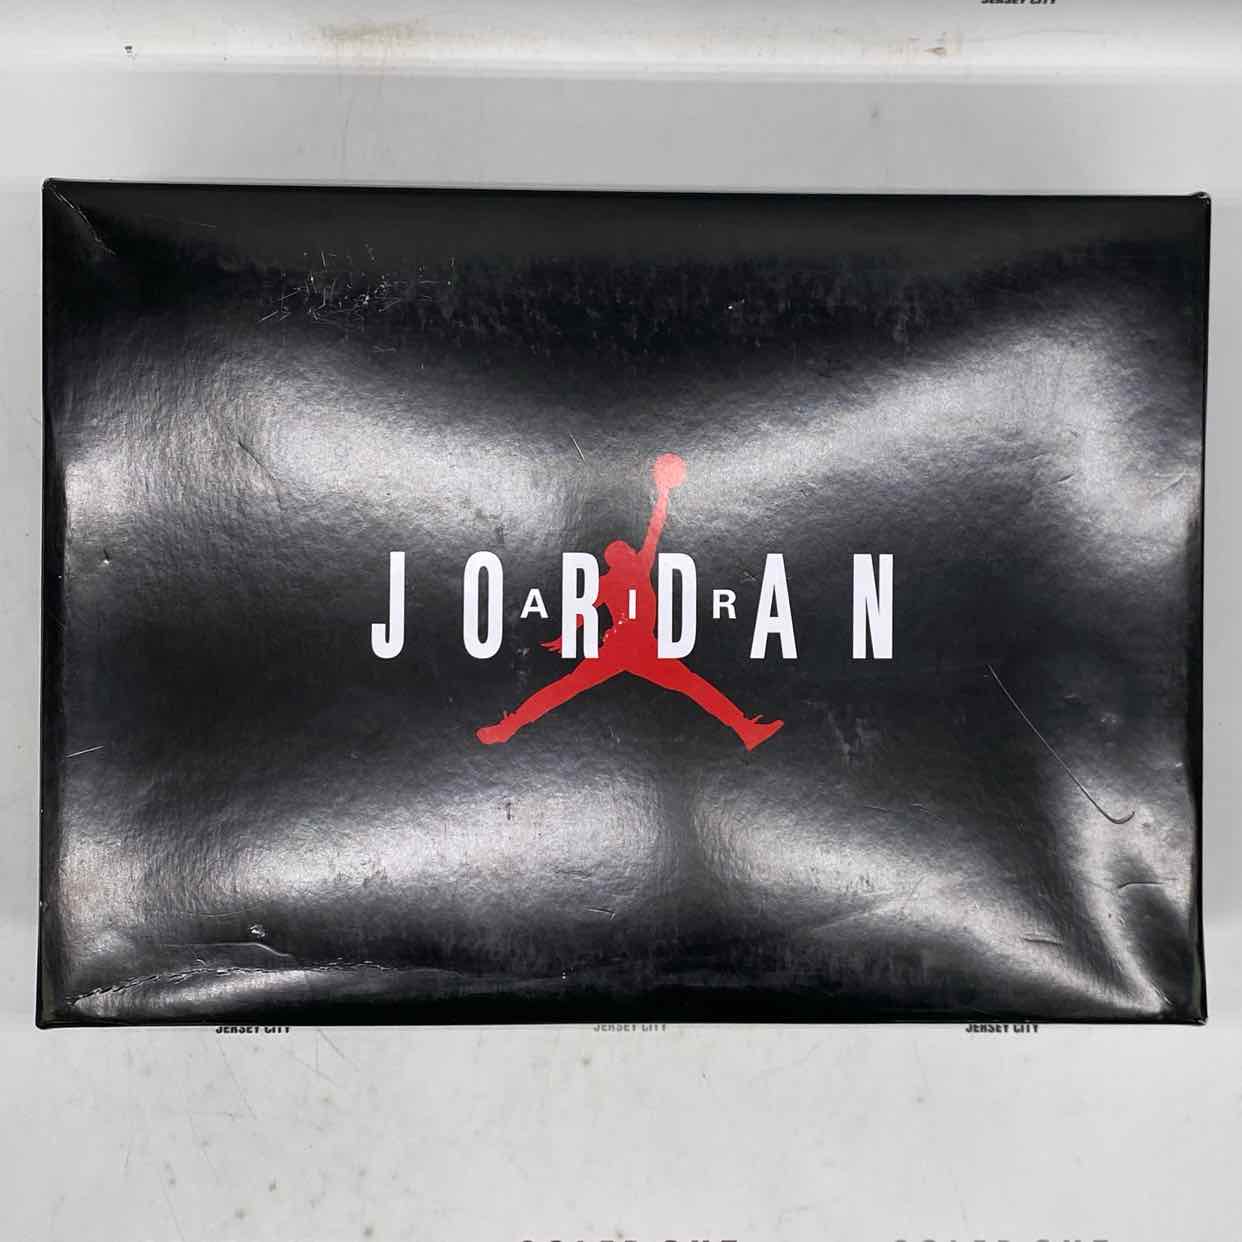 Air Jordan 11 Retro Low &quot;72-10&quot; 2022 New Size 12